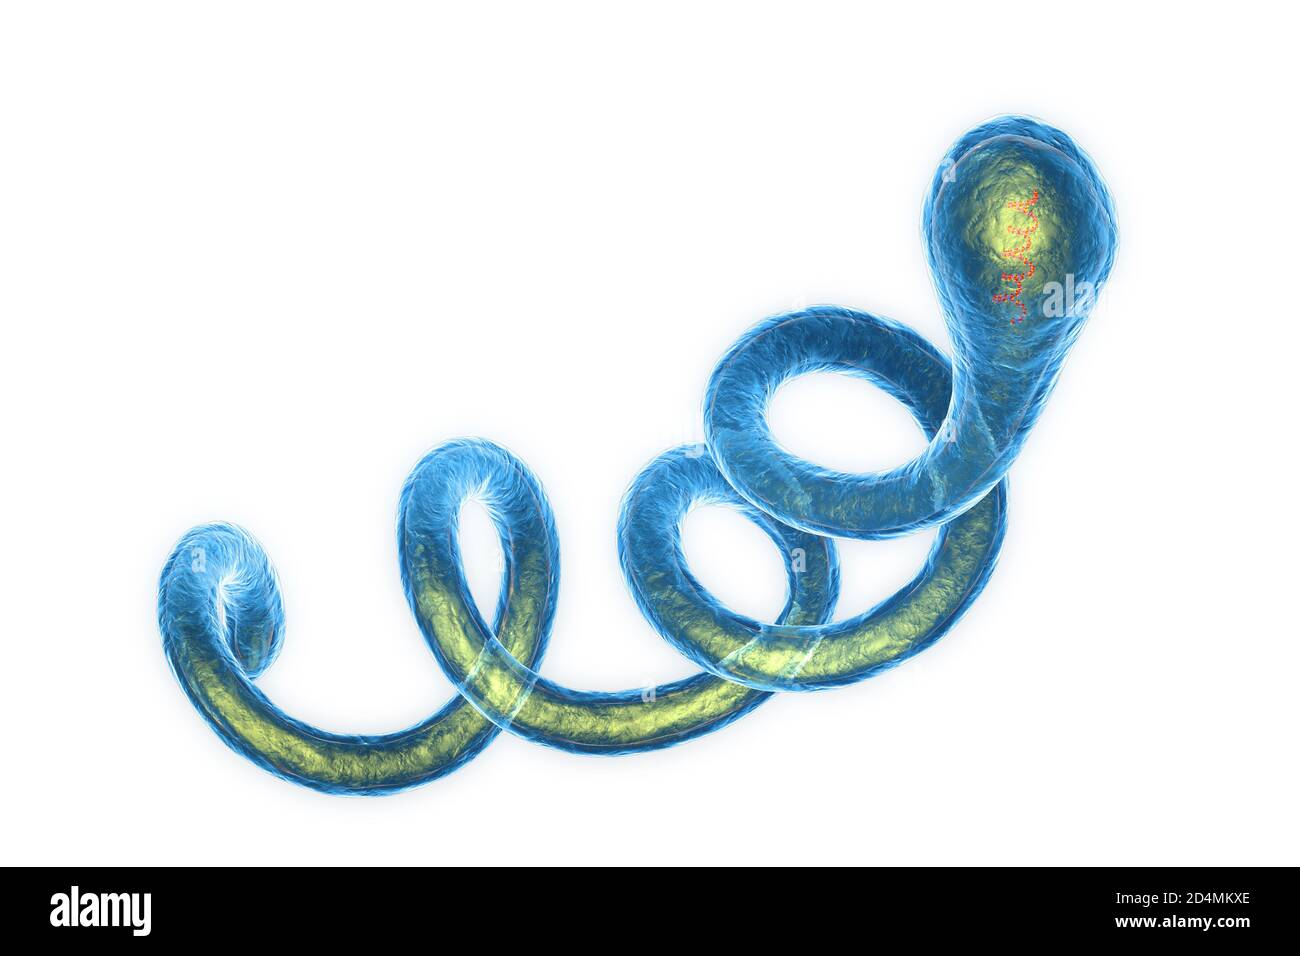 Illustrazione di batteri Spirochaete Borrelia, la causa della malattia di Lyme. Questi batteri spirochaete (a forma di spirale) sono passati agli esseri umani attraverso il Foto Stock